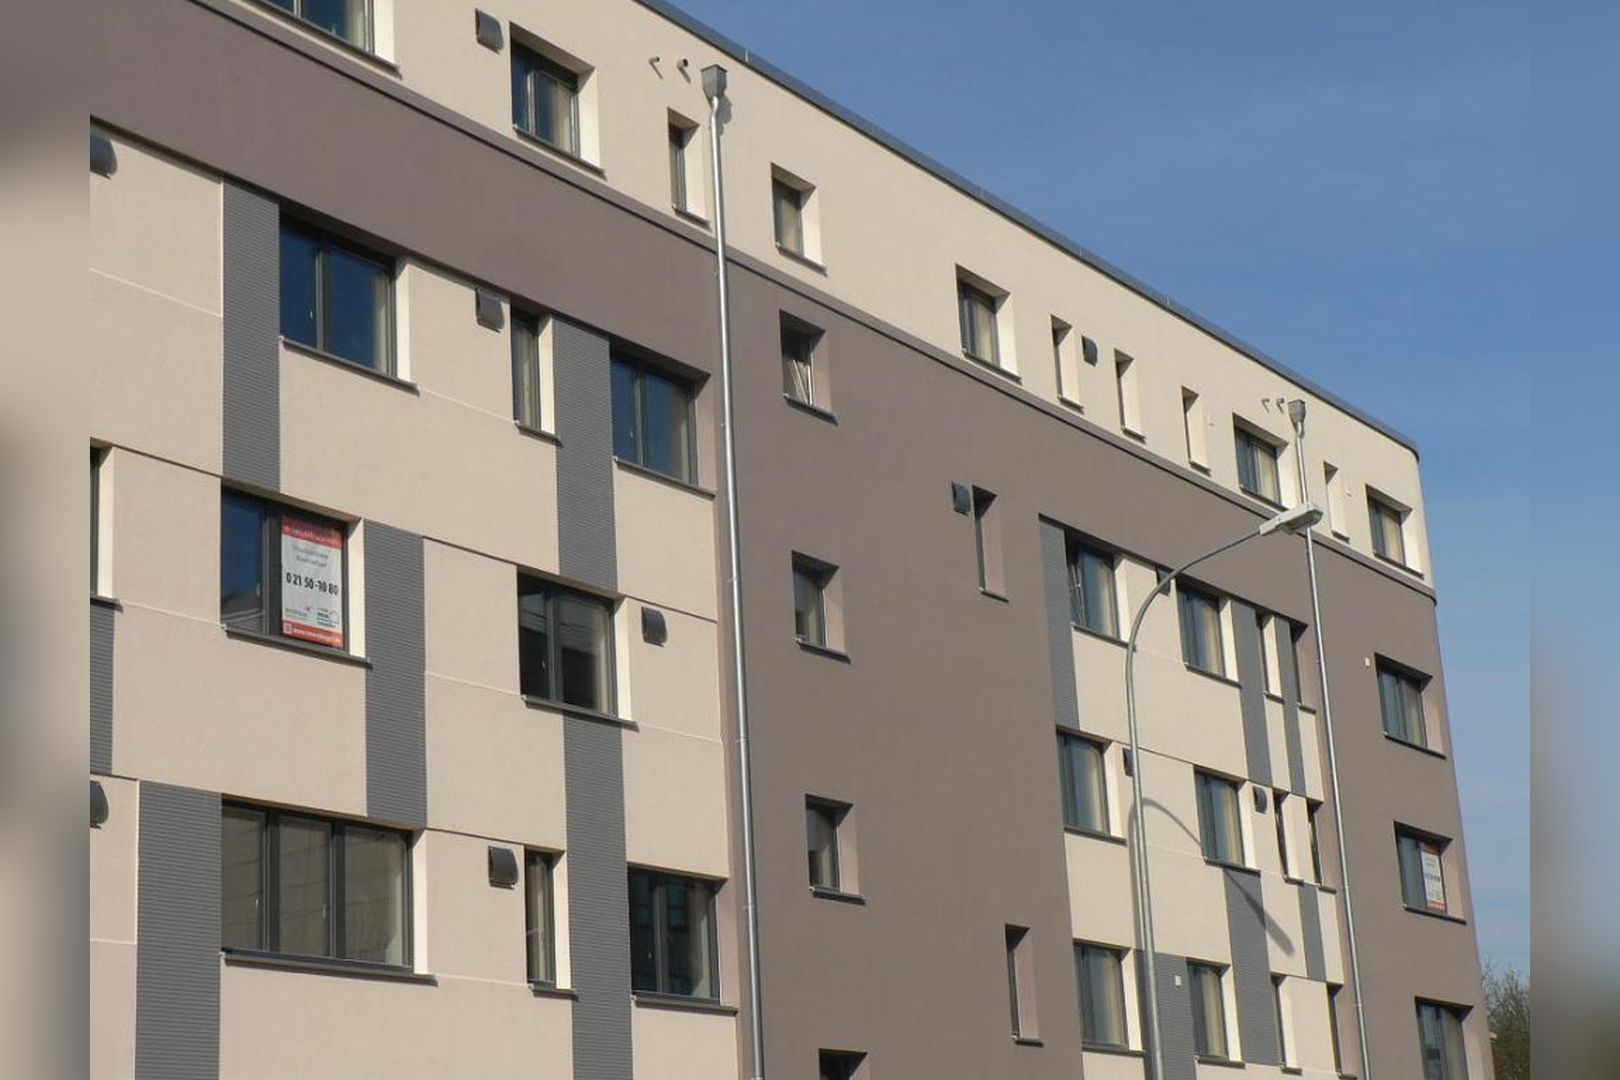 Immobilie Nr.Hilden 016 - 3-Raum-Wohnung mit Süd-West-Balkon, Aufzug und Topp-Aufteilung! - Bild 2.jpg